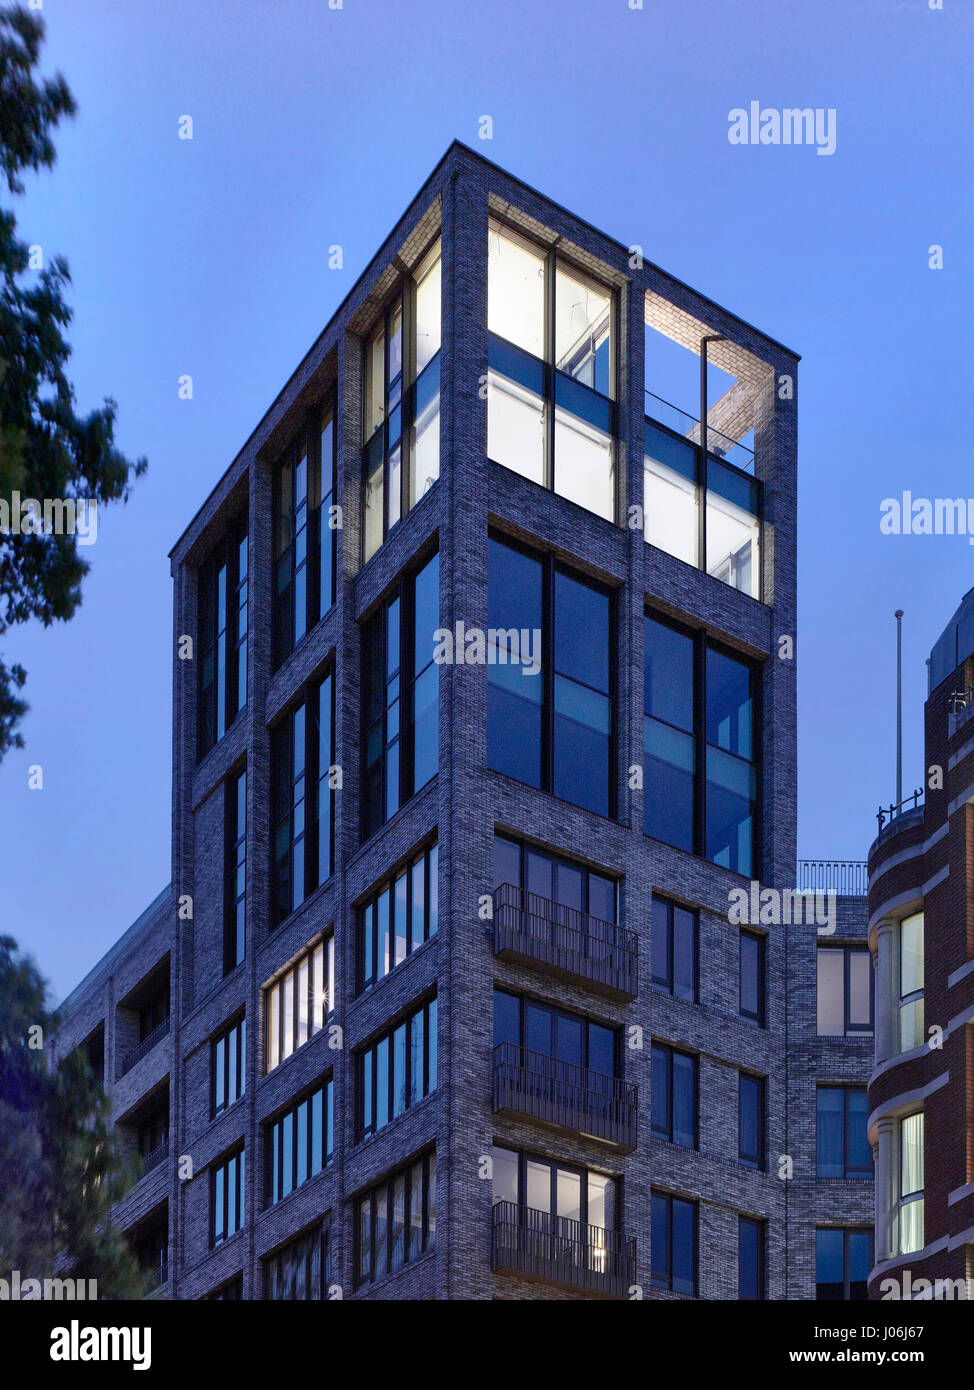 Laterne in der Abenddämmerung. 55 Victoria Street, London, Vereinigtes Königreich. Architekt: Steif + Trevillion Architekten, 2016. Stockfoto